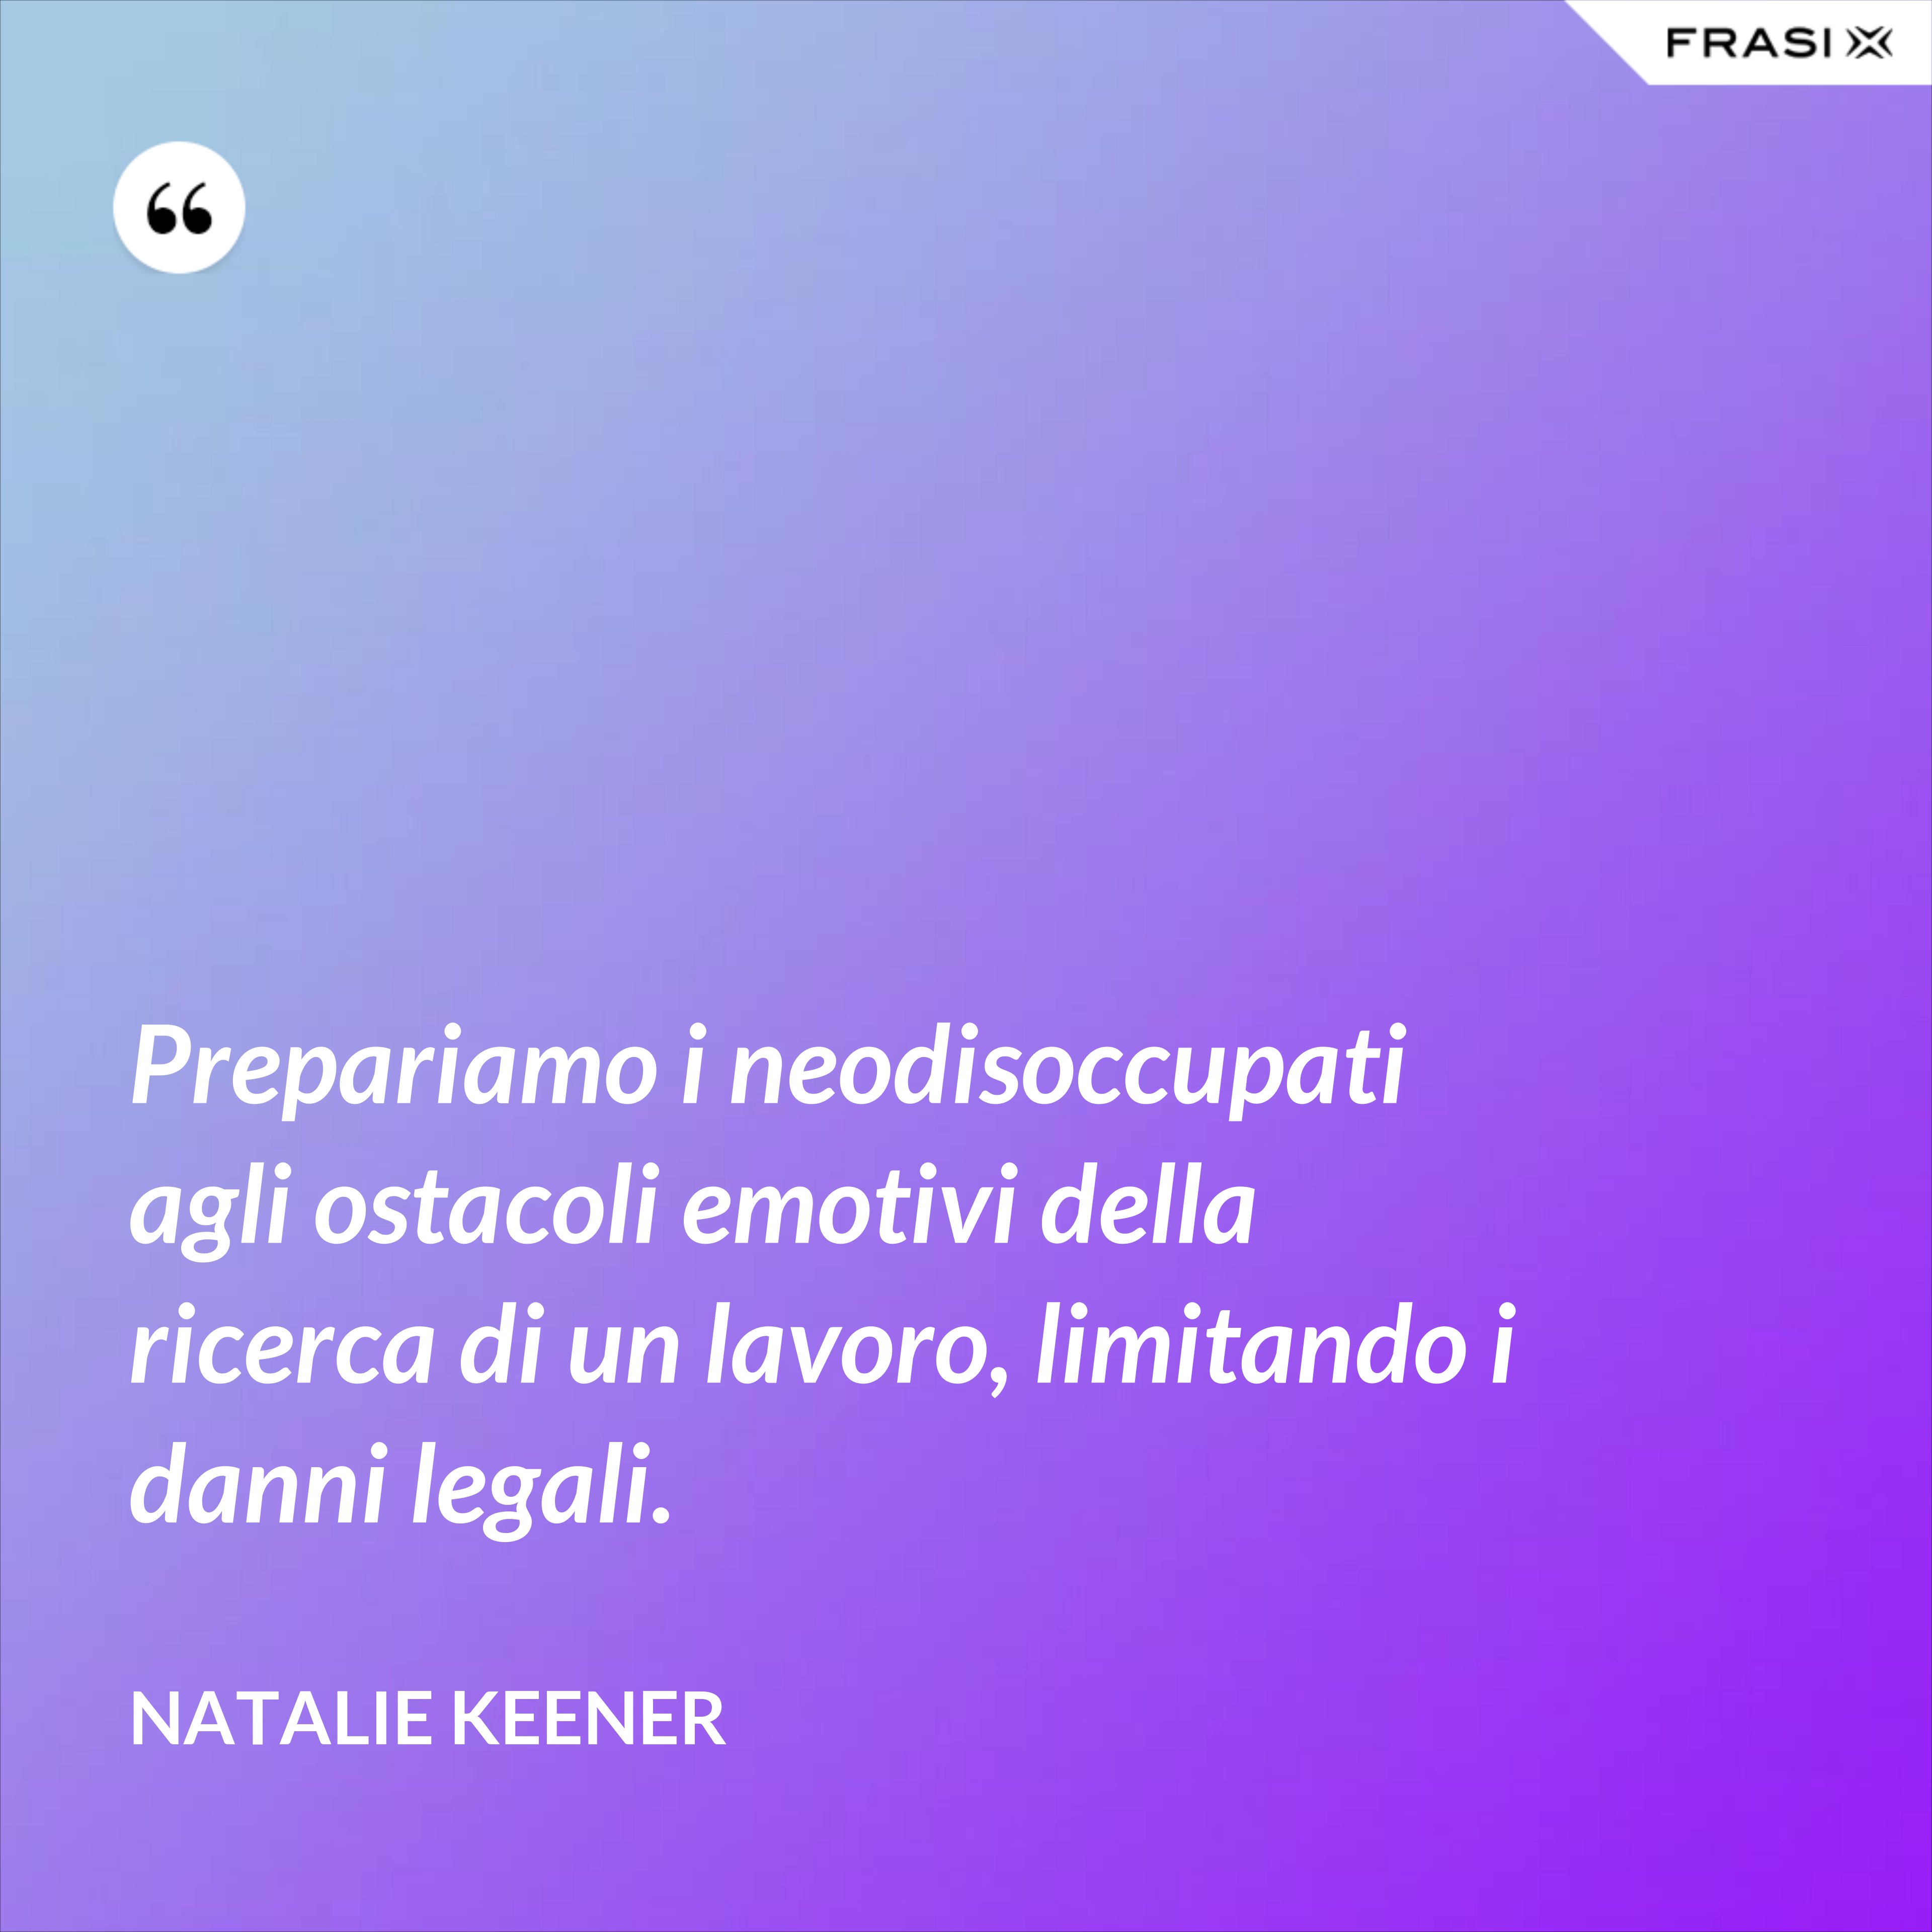 Prepariamo i neodisoccupati agli ostacoli emotivi della ricerca di un lavoro, limitando i danni legali. - Natalie Keener